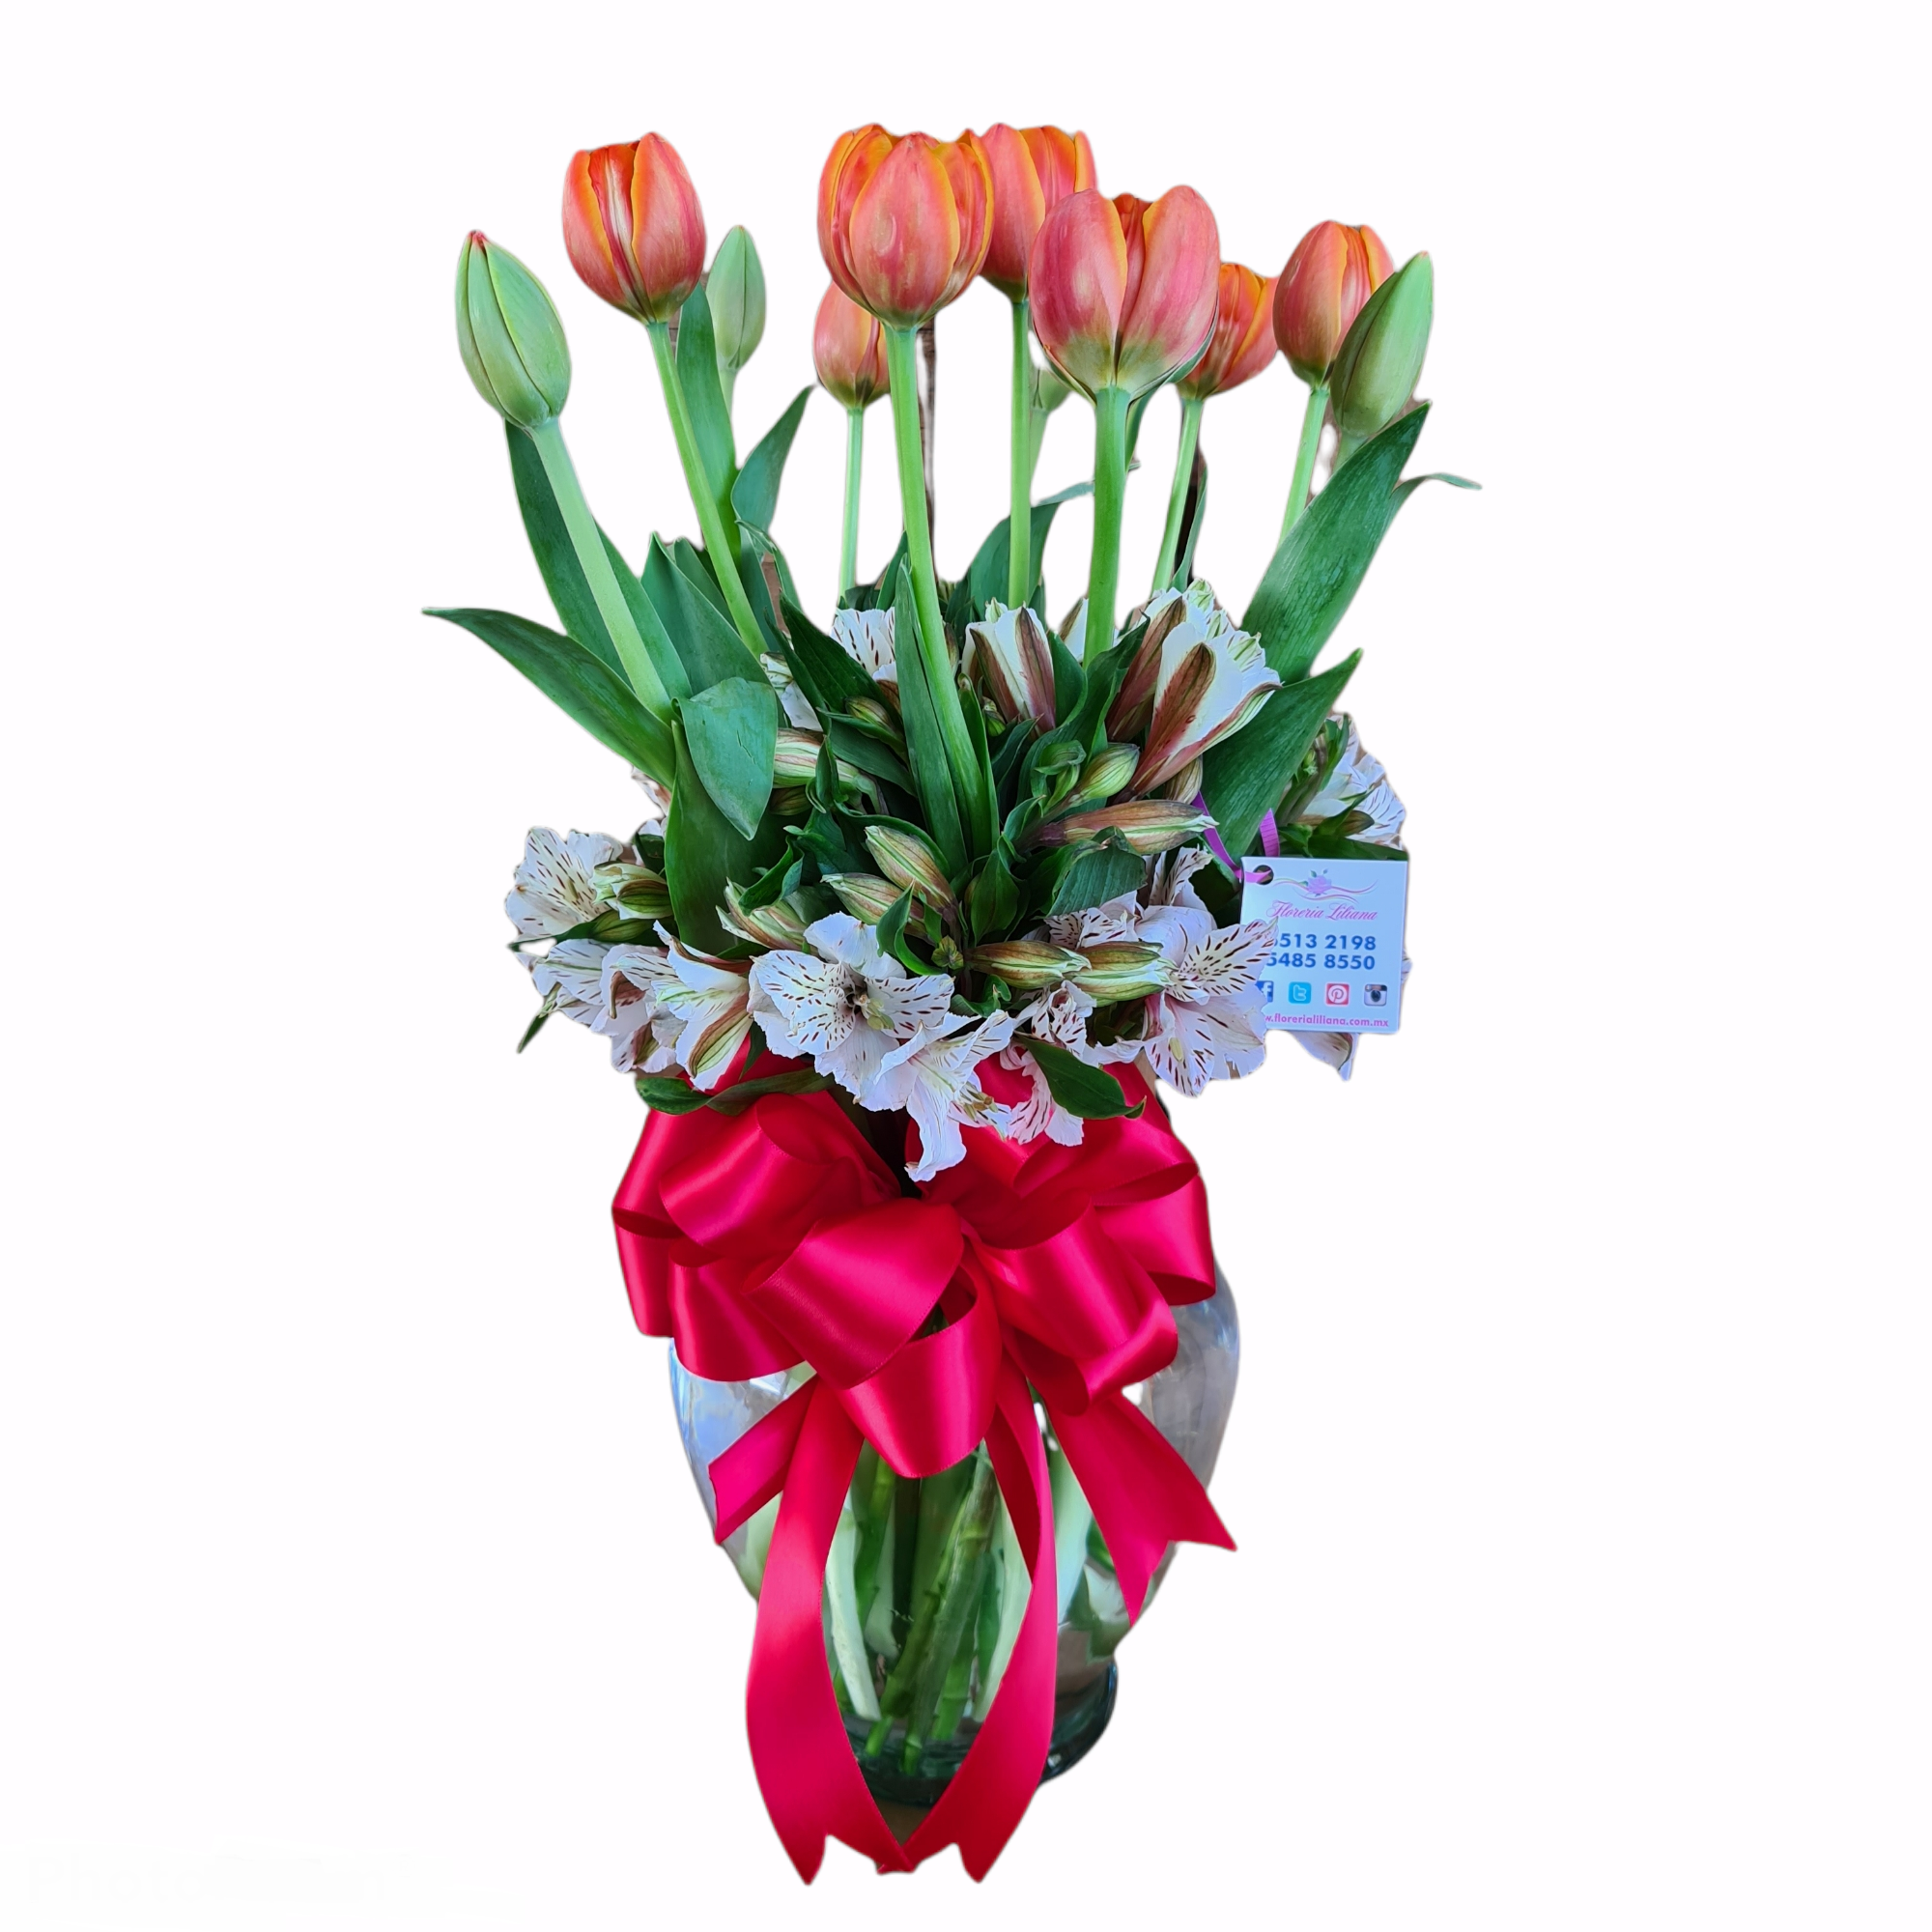 Hermoso Arreglo de tulipanes holandeses de 10 piezas en color naranja acompañados por astromelia, en un florero de cristal y adornadas por un listón. Envía flores a domicilio desde Liliana online.